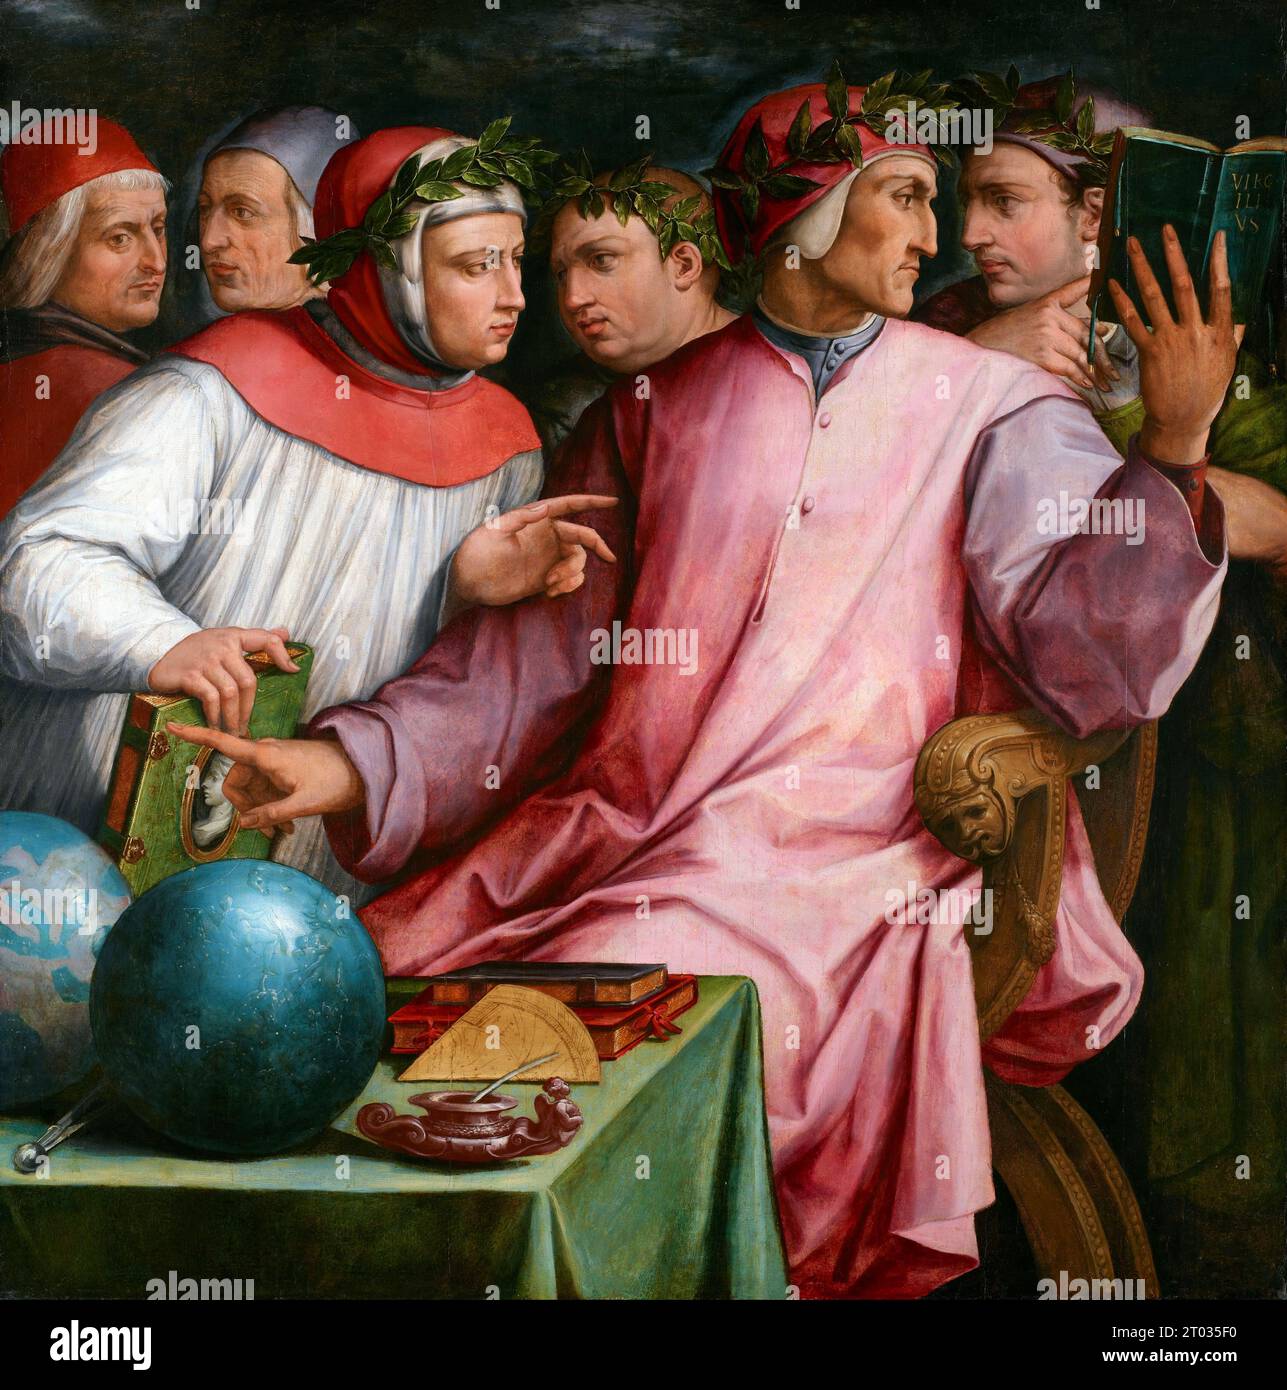 Sei poeti toscani di Giorgio Vasari, 1544; da sinistra a destra: Cristoforo Landino, Marsilio Ficino, Francesco Petrarca, Giovanni Boccaccio, Dante Alighieri, e Guido Cavalcanti, dipinto di Giorgio Vasari Foto Stock